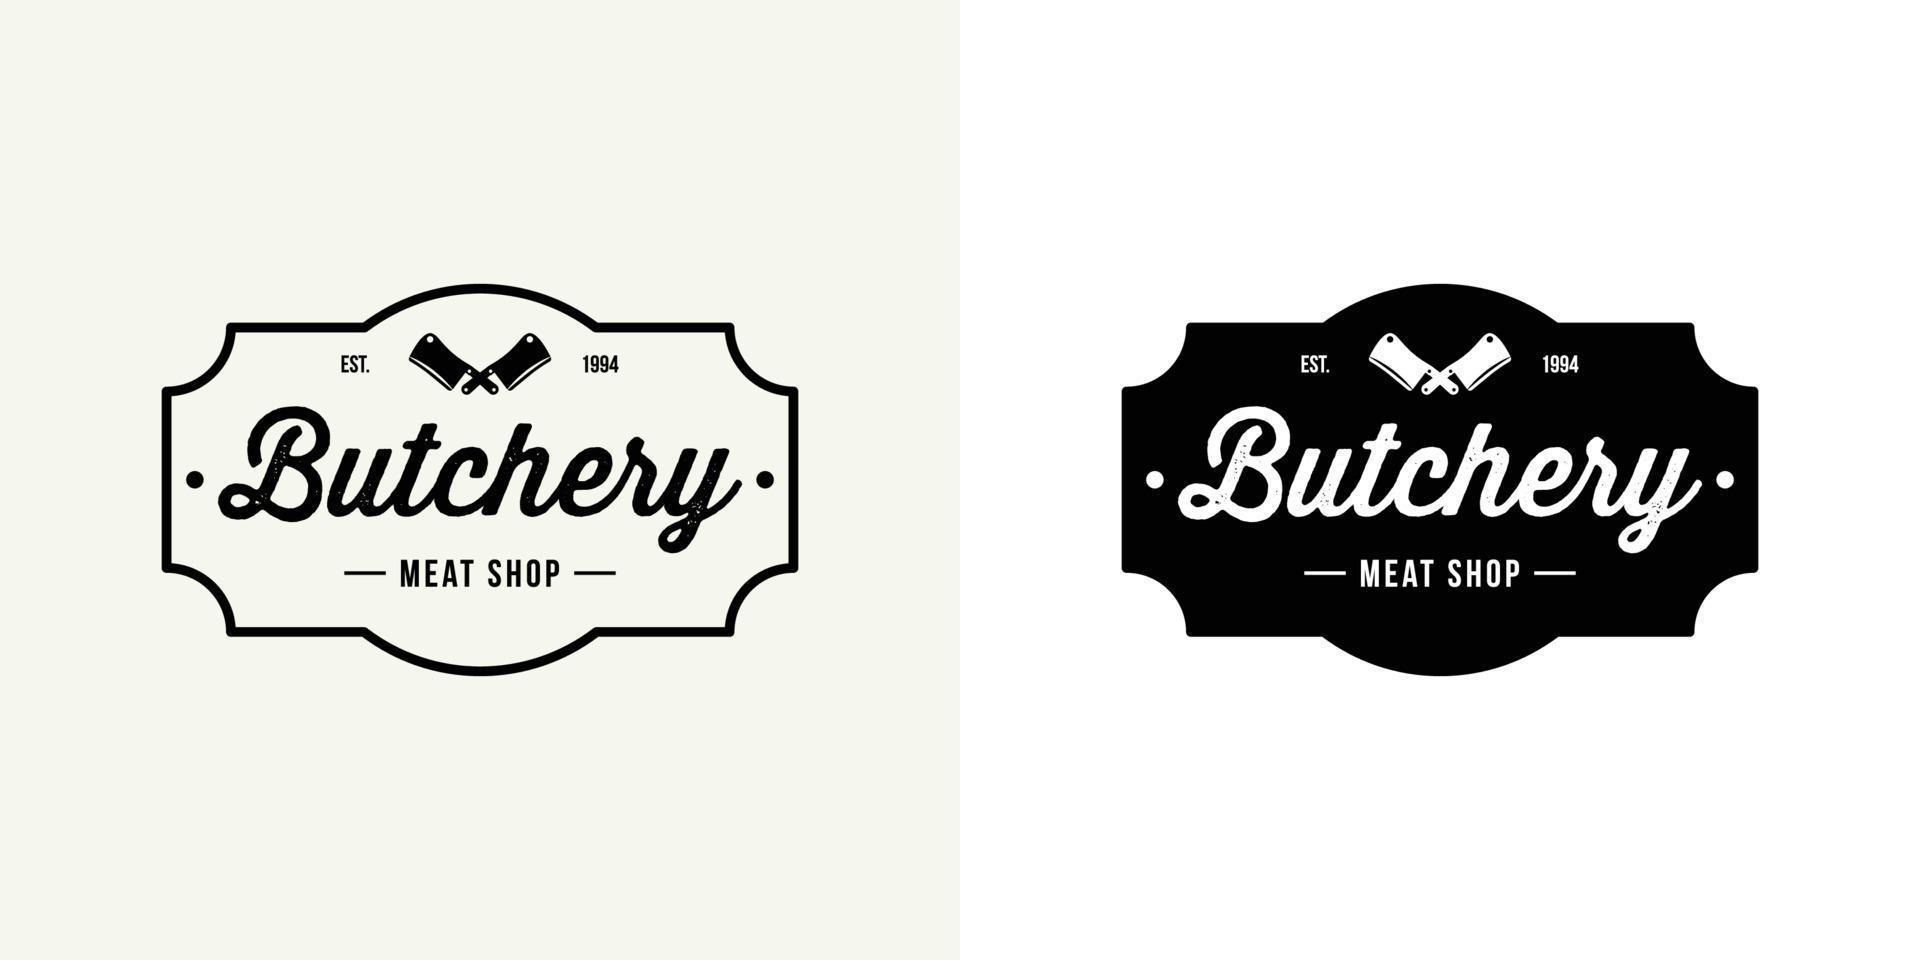 Butchery shop logo vector